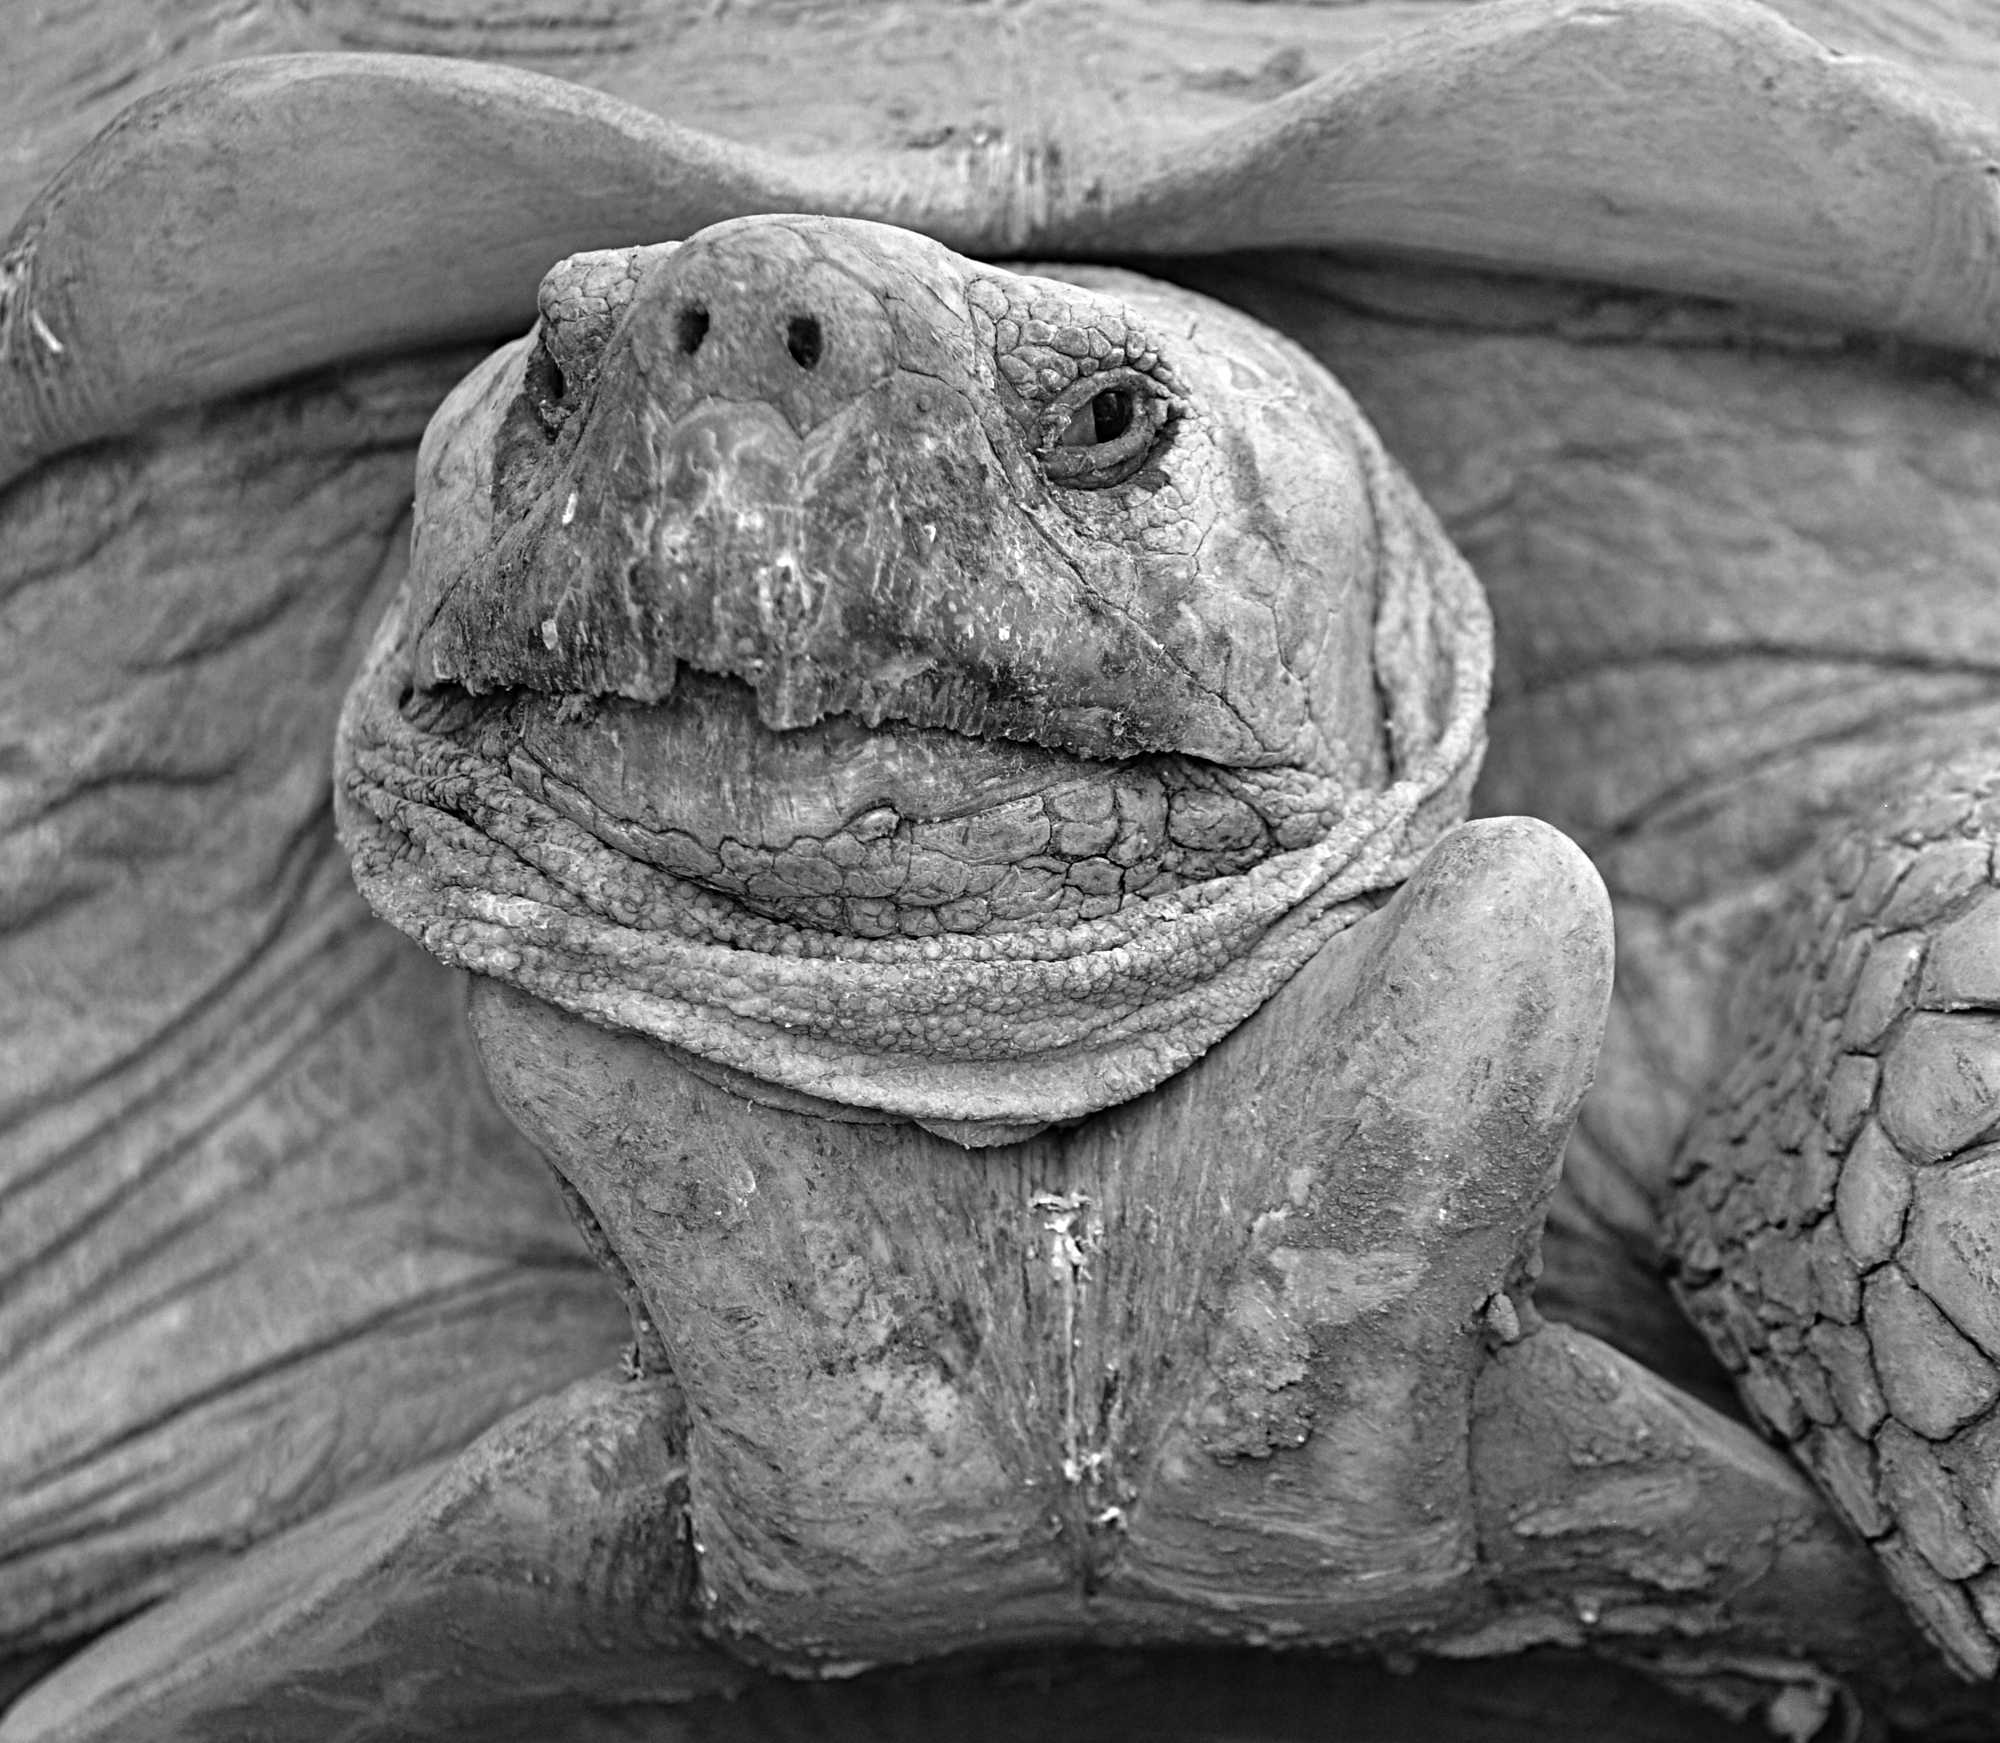 Tortoise face